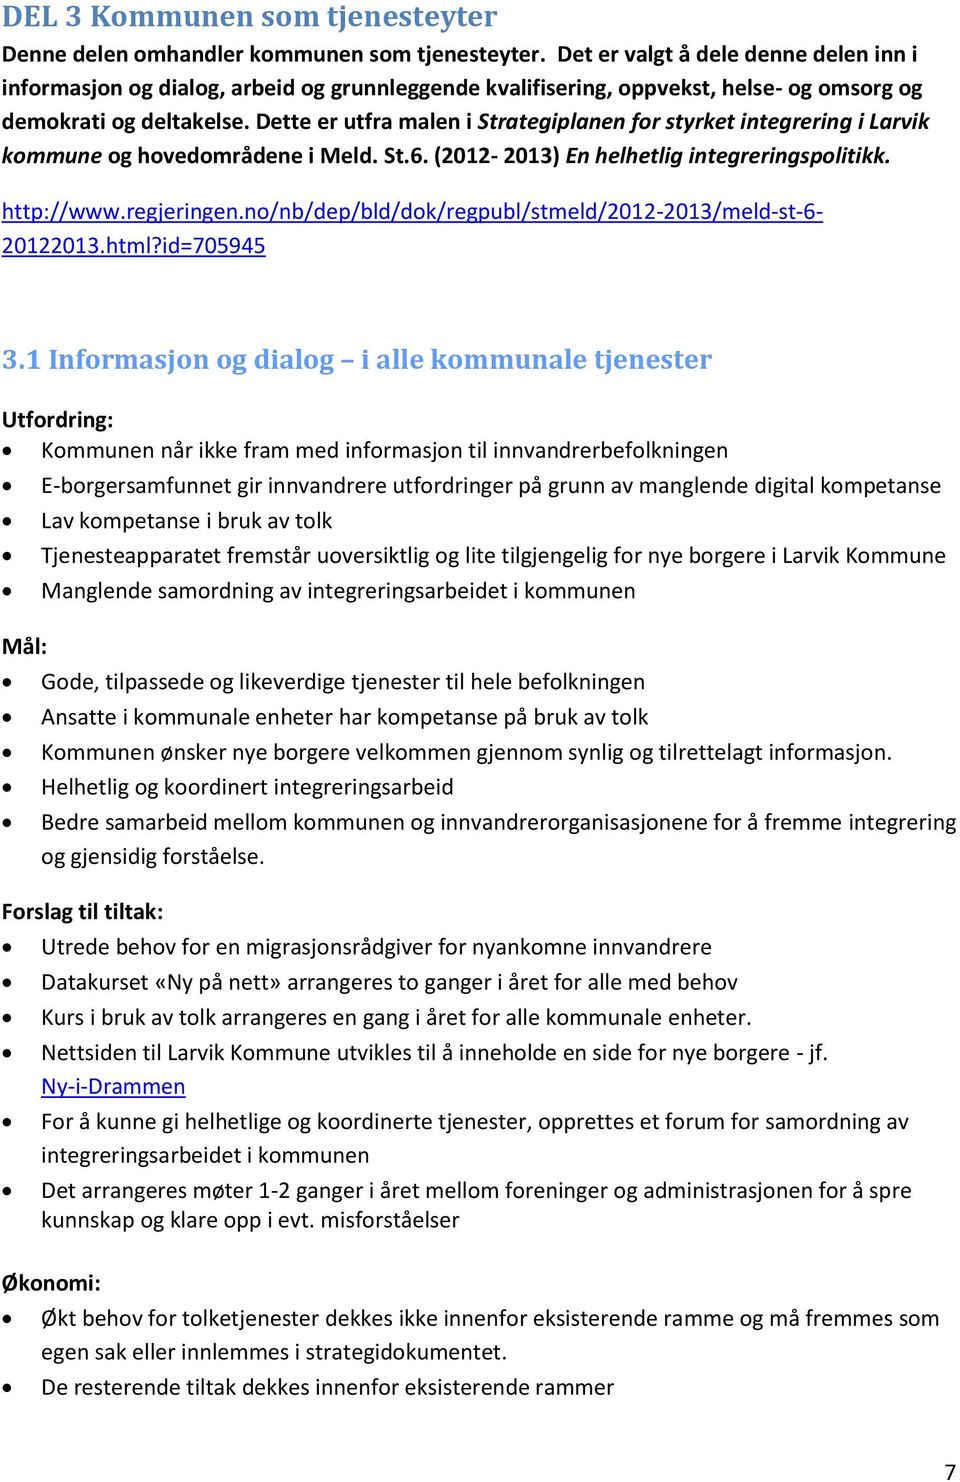 Dette er utfra malen i Strategiplanen for styrket integrering i Larvik kommune og hovedområdene i Meld. St.6. (2012-2013) En helhetlig integreringspolitikk. http://www.regjeringen.